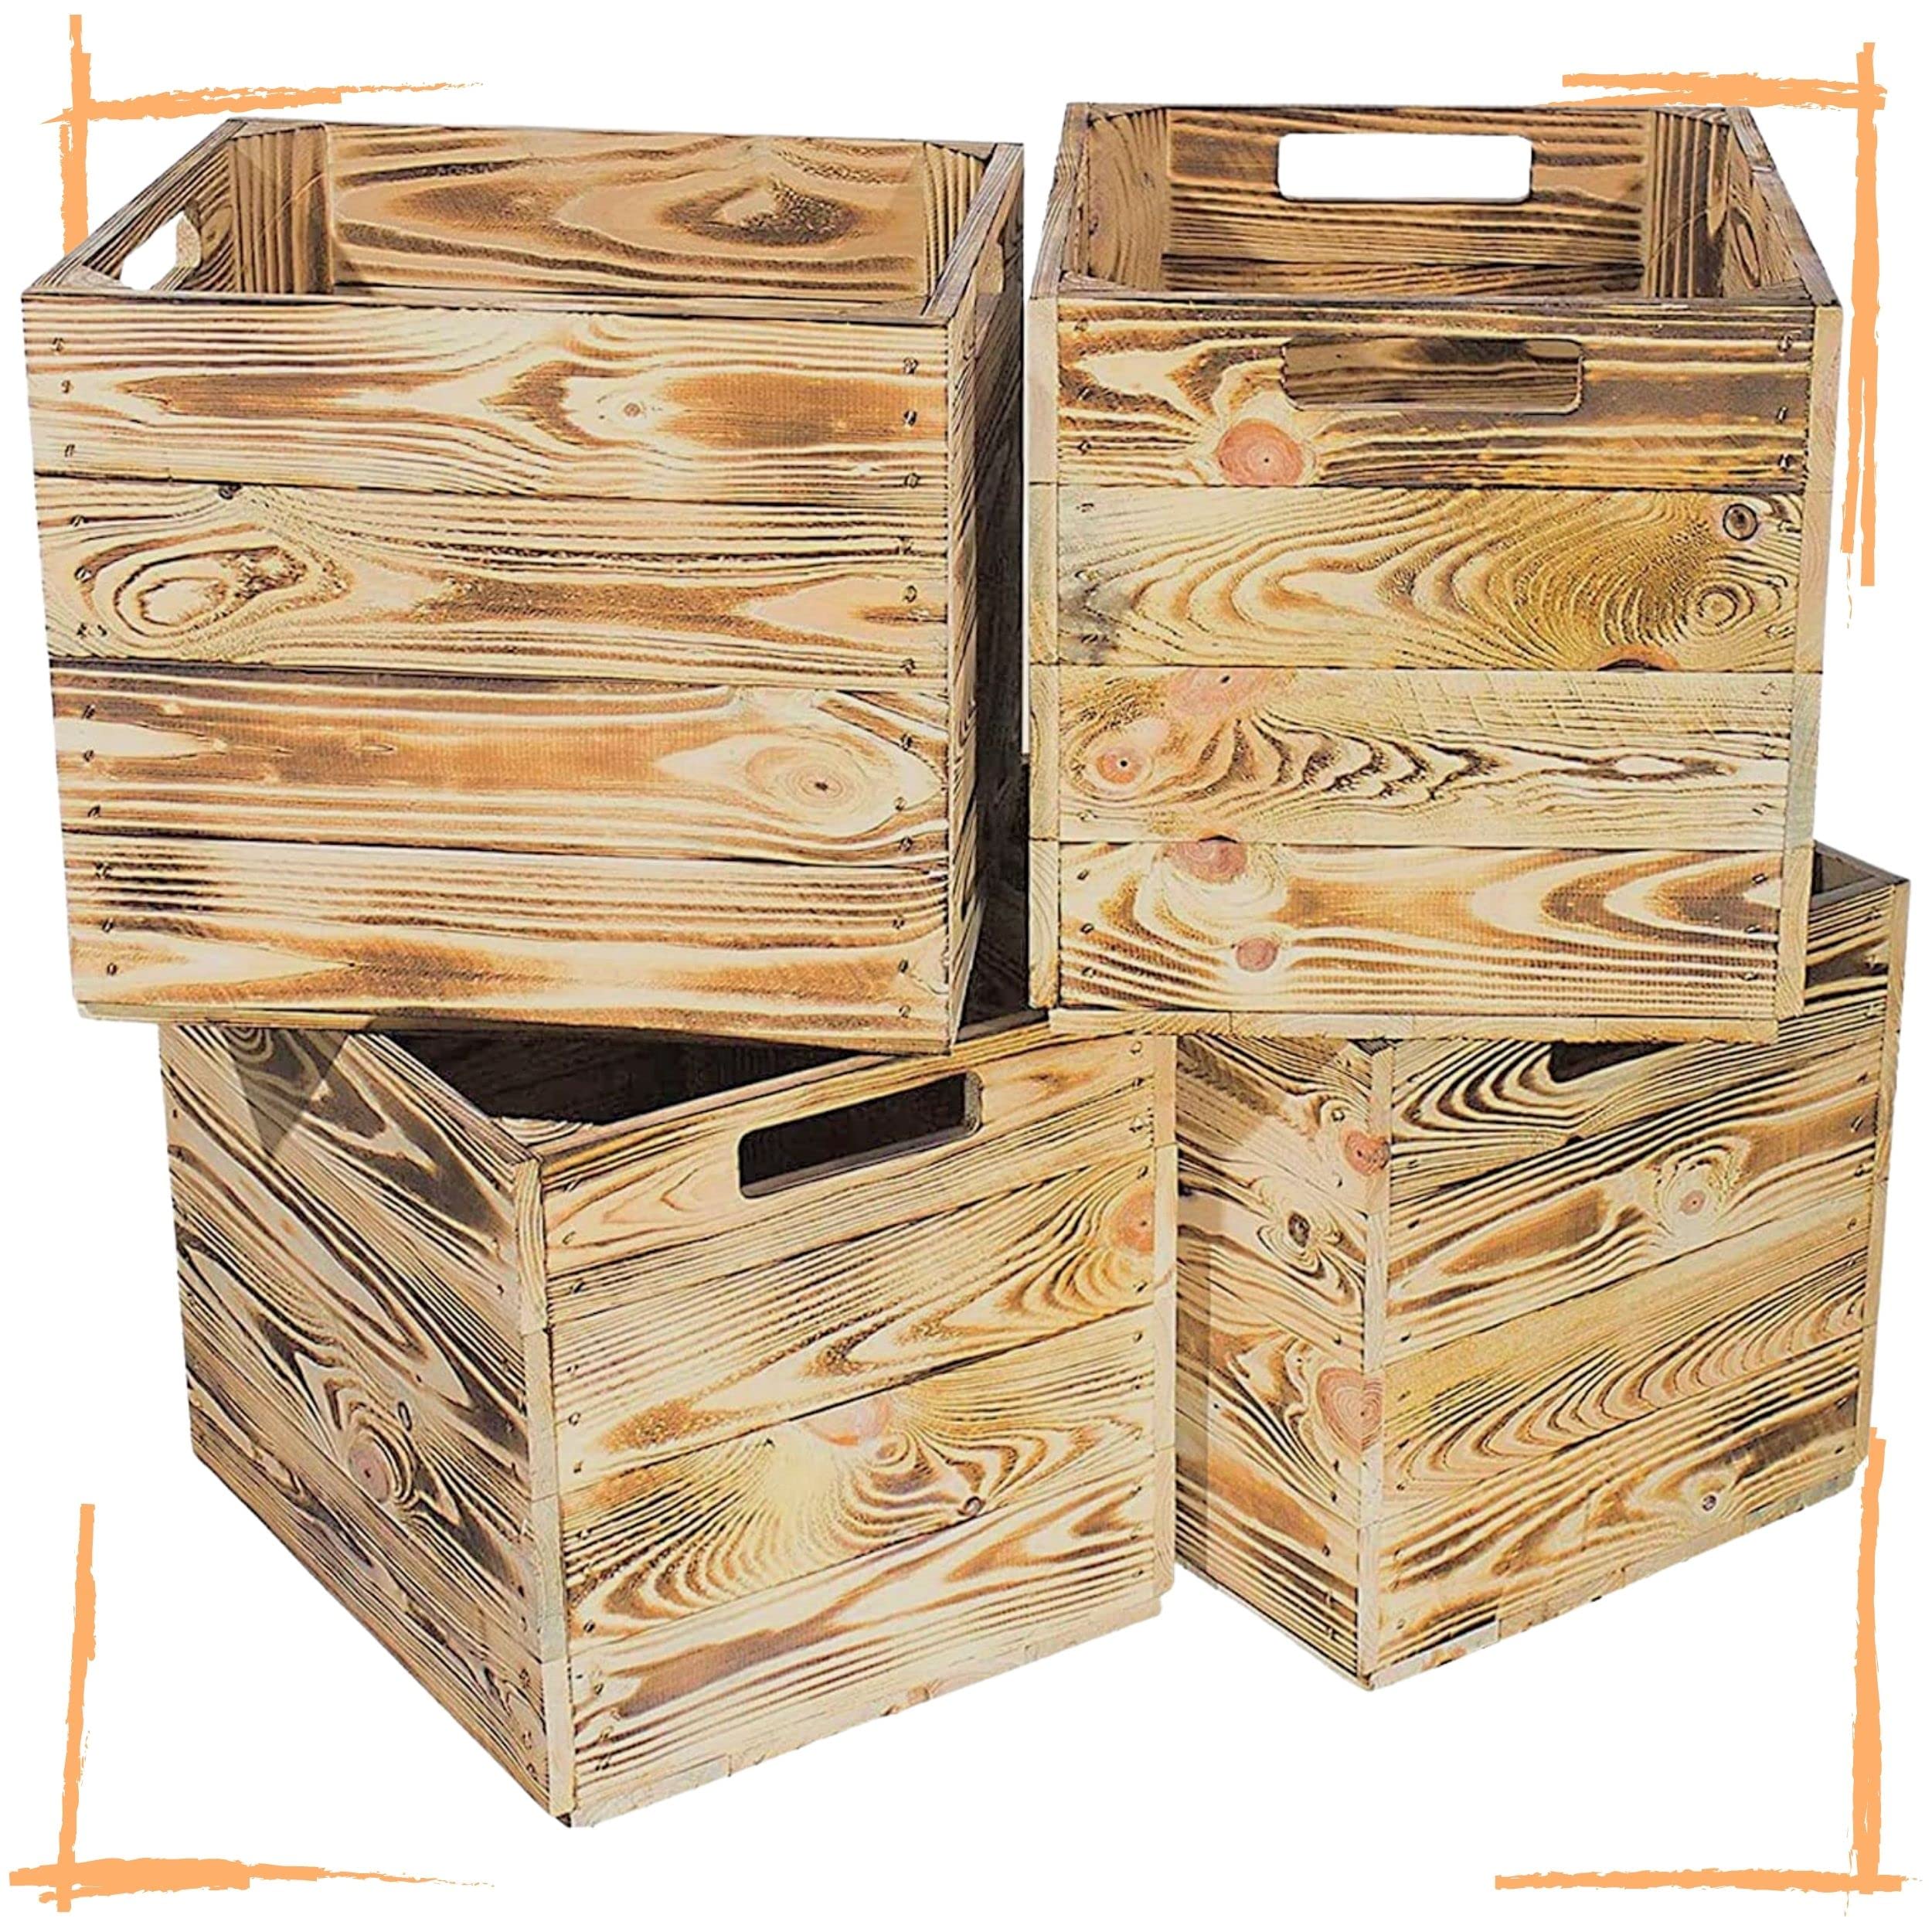 4 schöne Korbkisten aus Holz, passend für Kallax Ikea, zum Verstauen von Schulsachen / Spielzeug, neu, 37,5x32x32,5cm (geflammt)